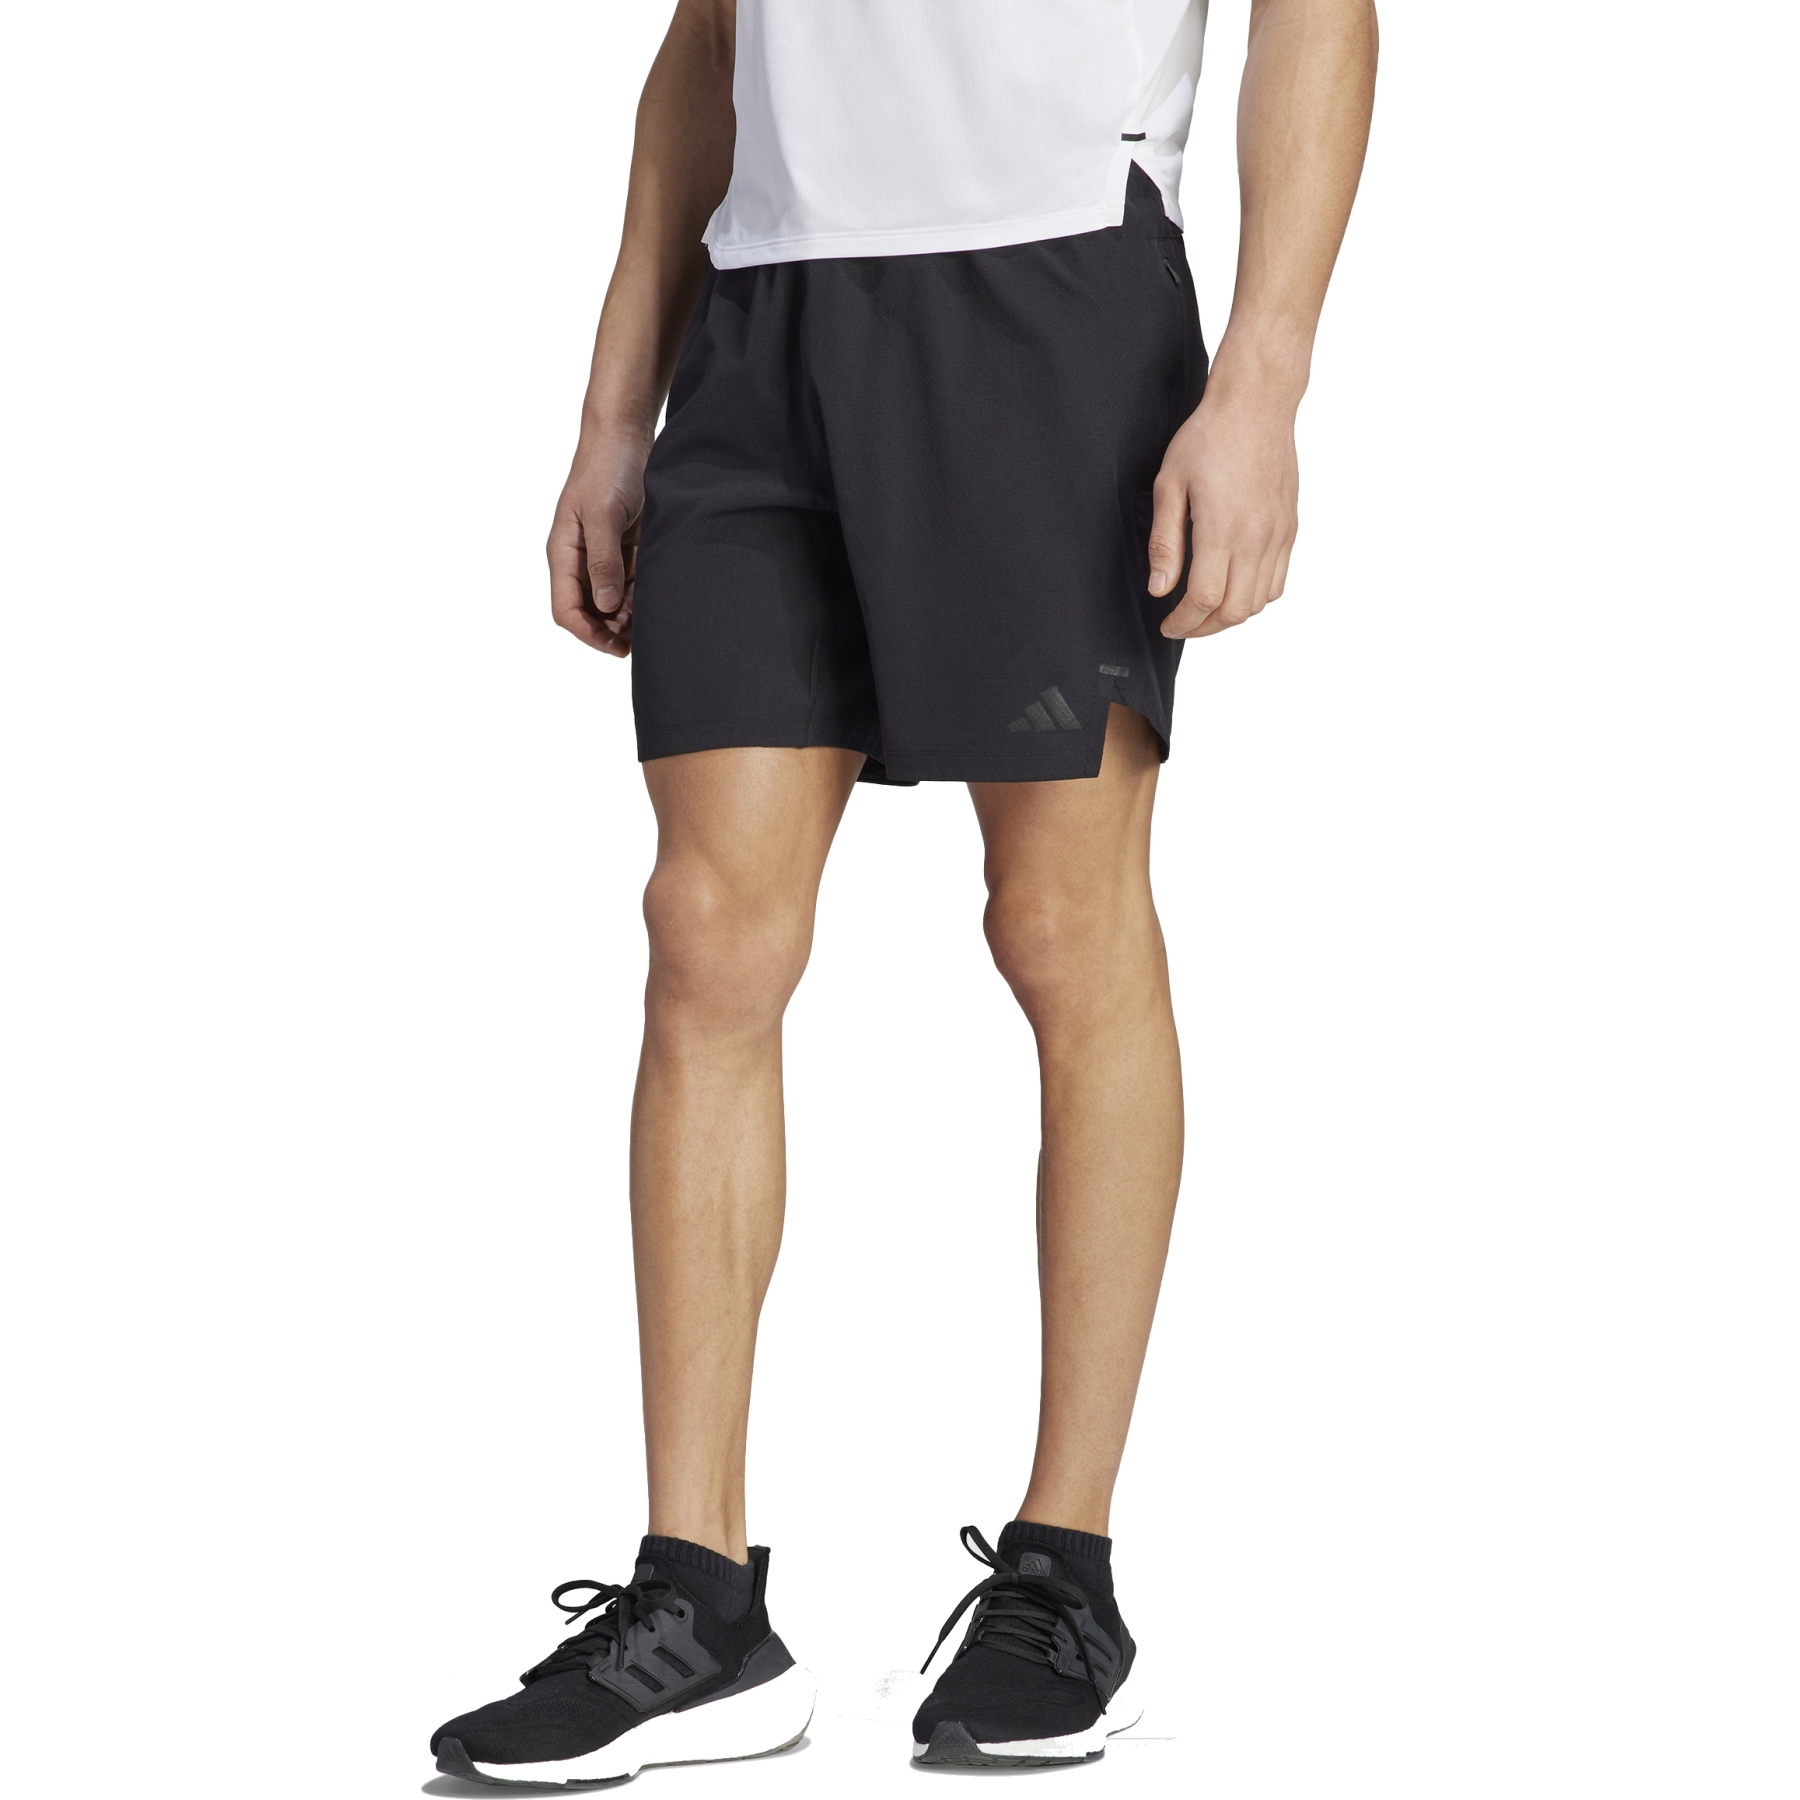 Produktbild von adidas Power Workout Knurling Shorts Herren - schwarz/schwarz IL1418